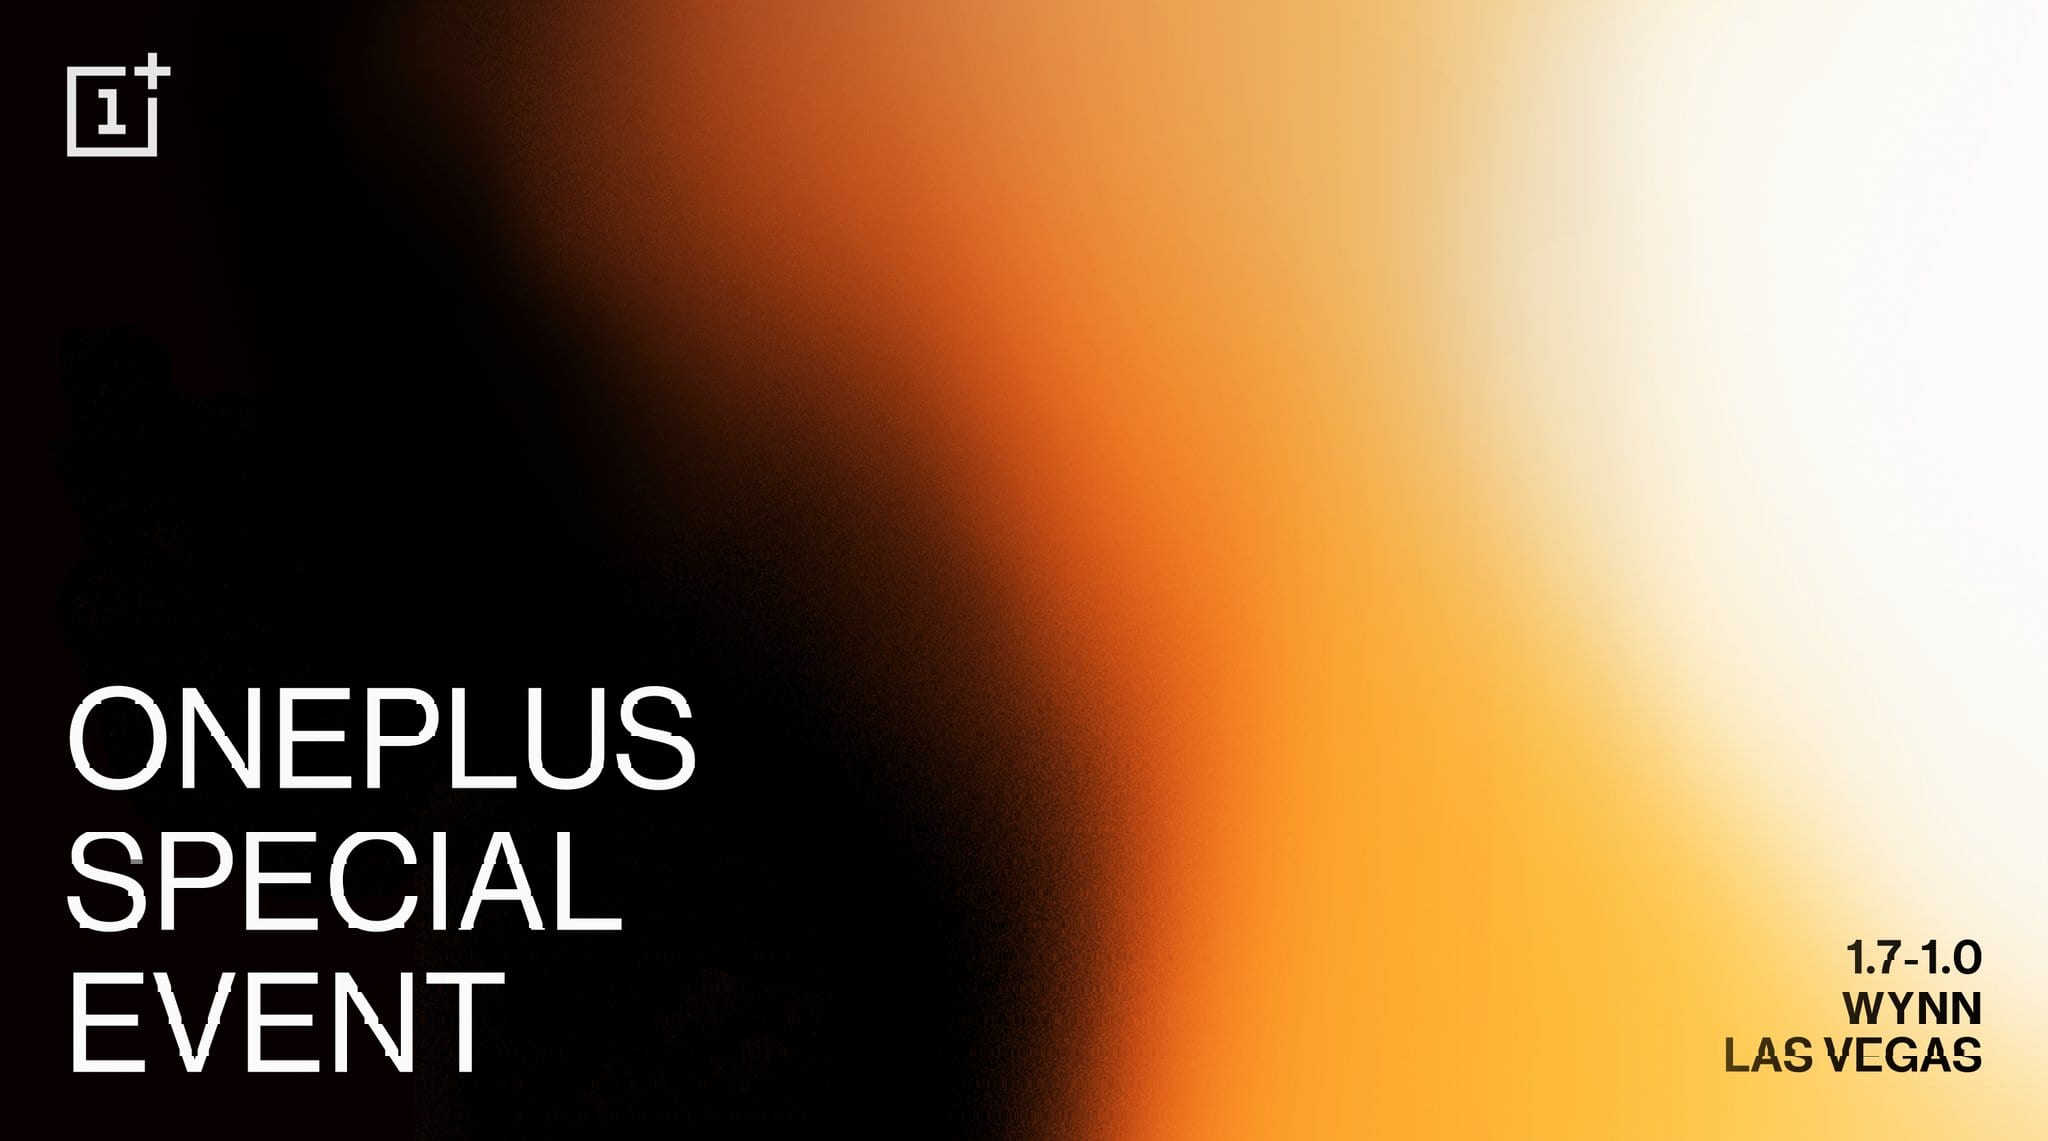 OnePlus envia convite para evento especial em sua primeira CES 1